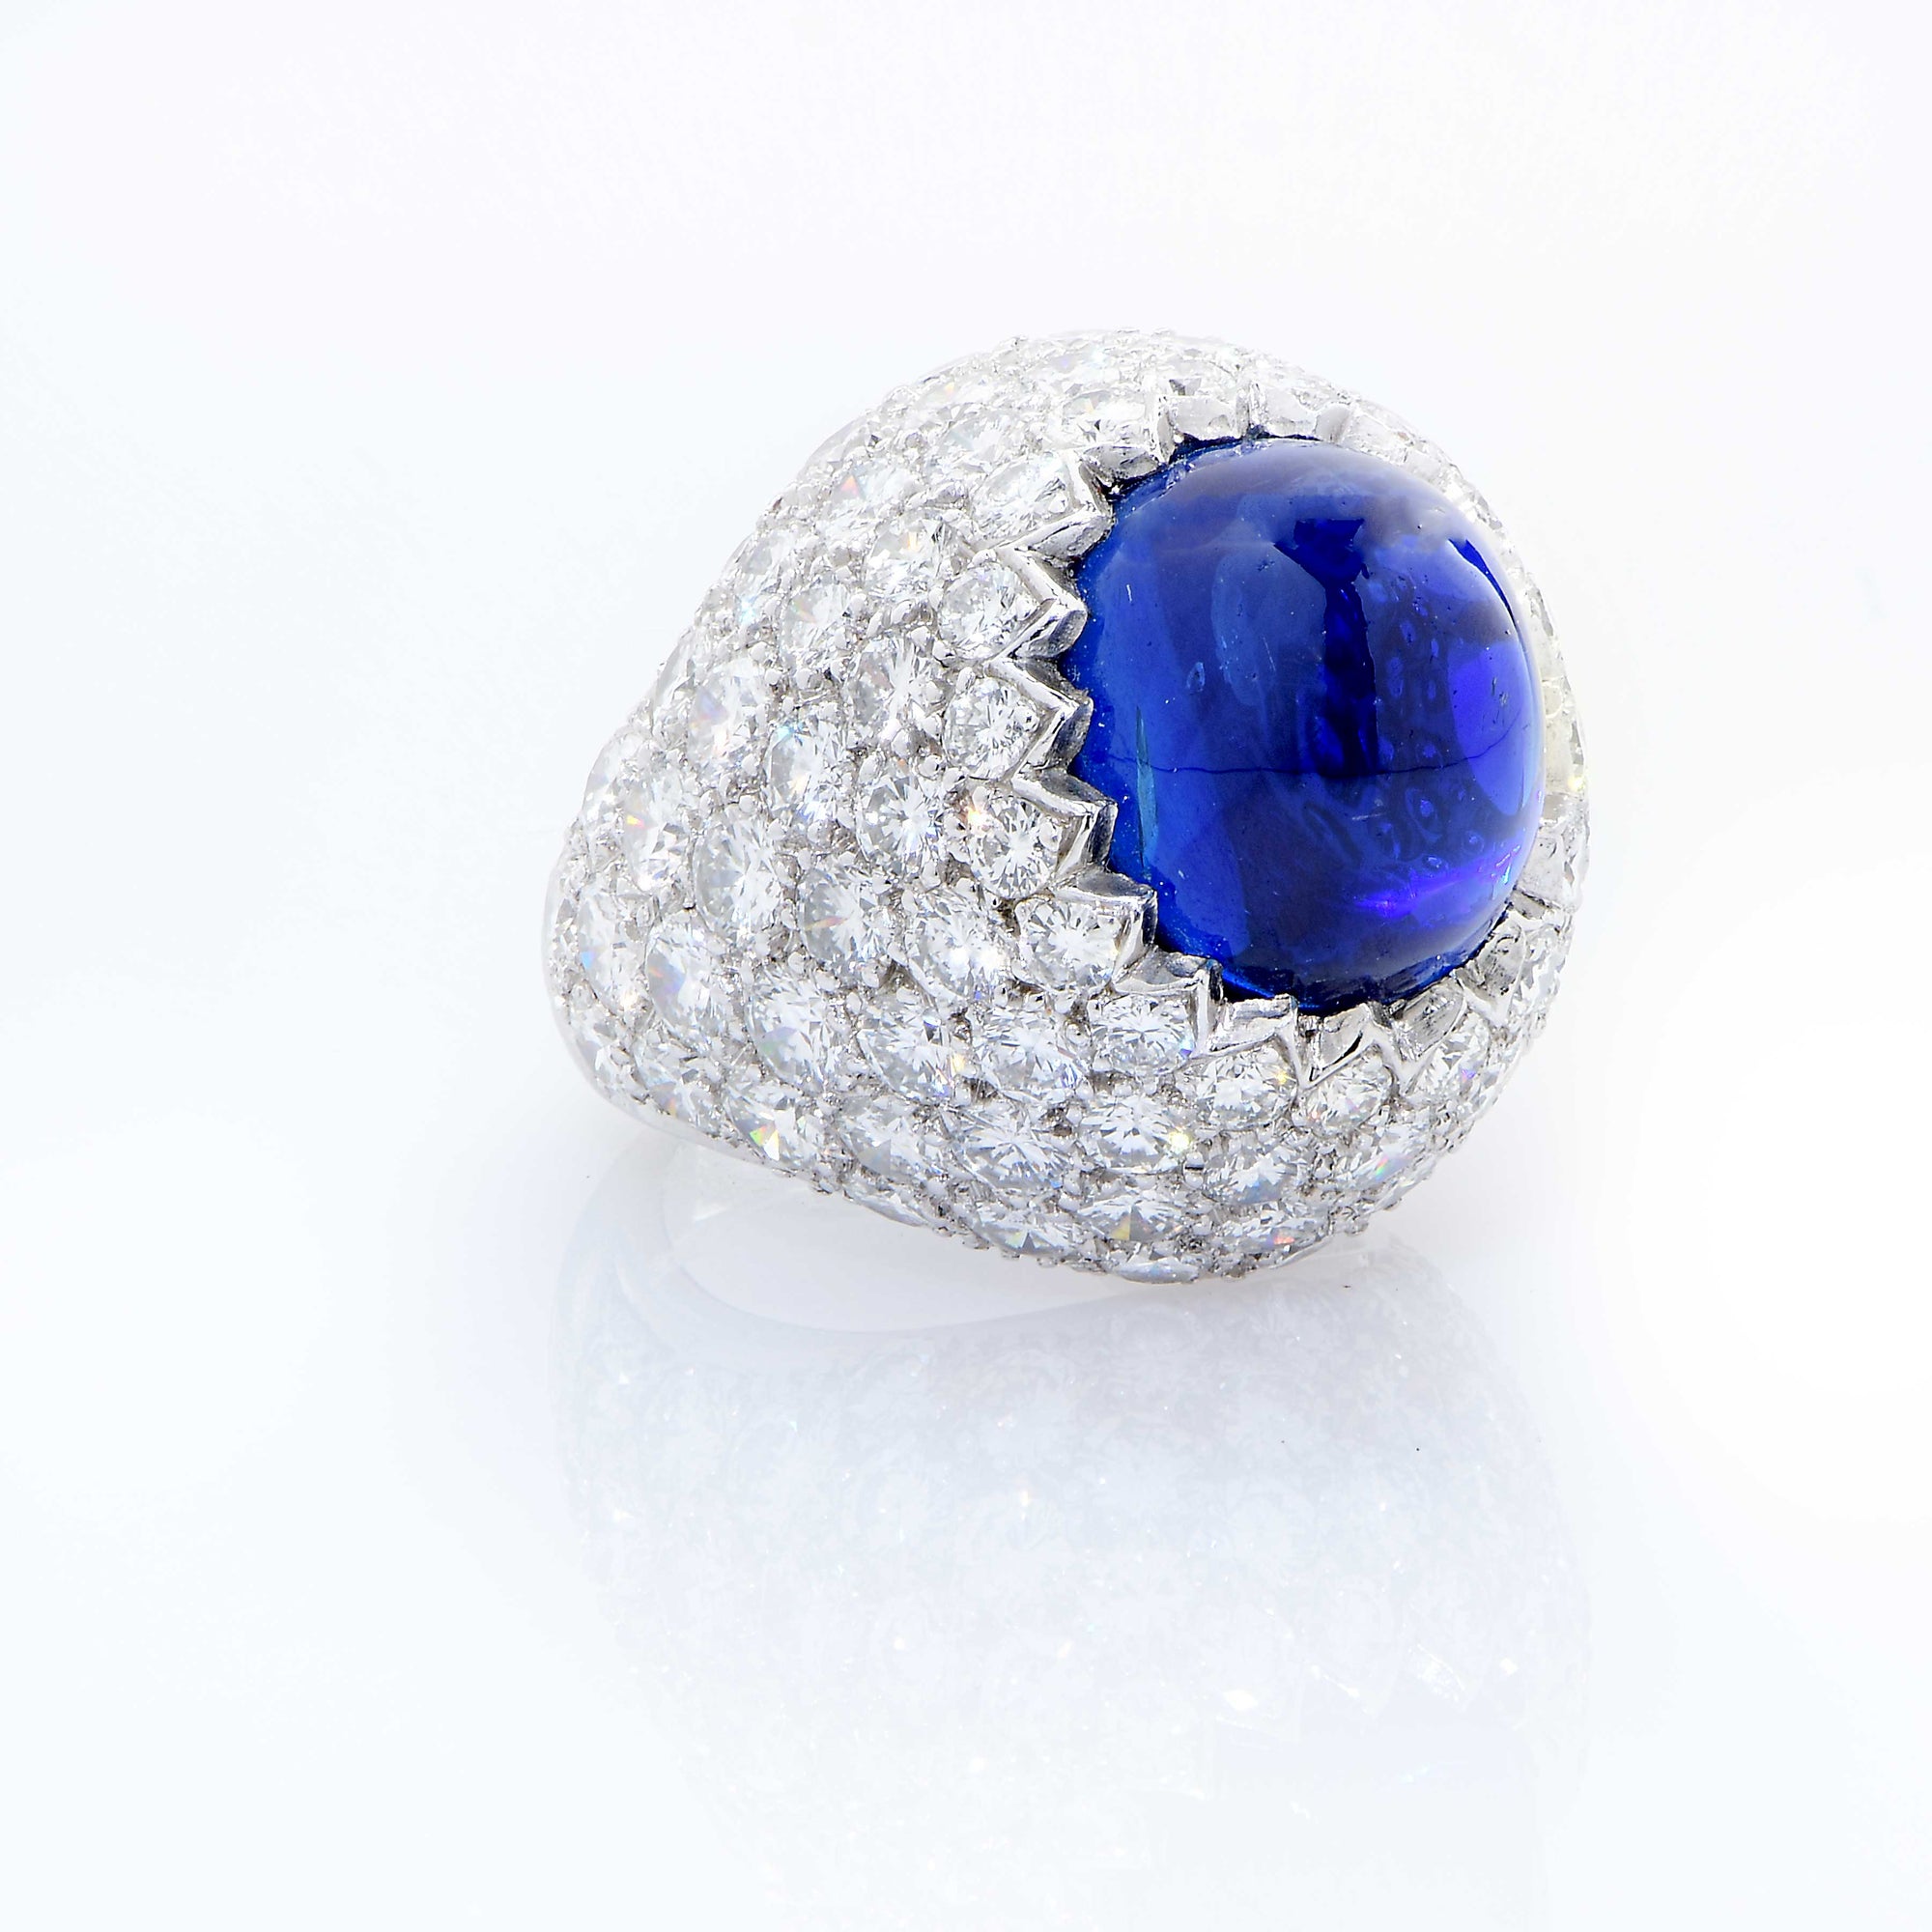 Sell Sapphire in Miami, Buy Sapphire in Miami, Sell Sapphire, Buy Sapphire, Sapphire Ring, Designer Ring.